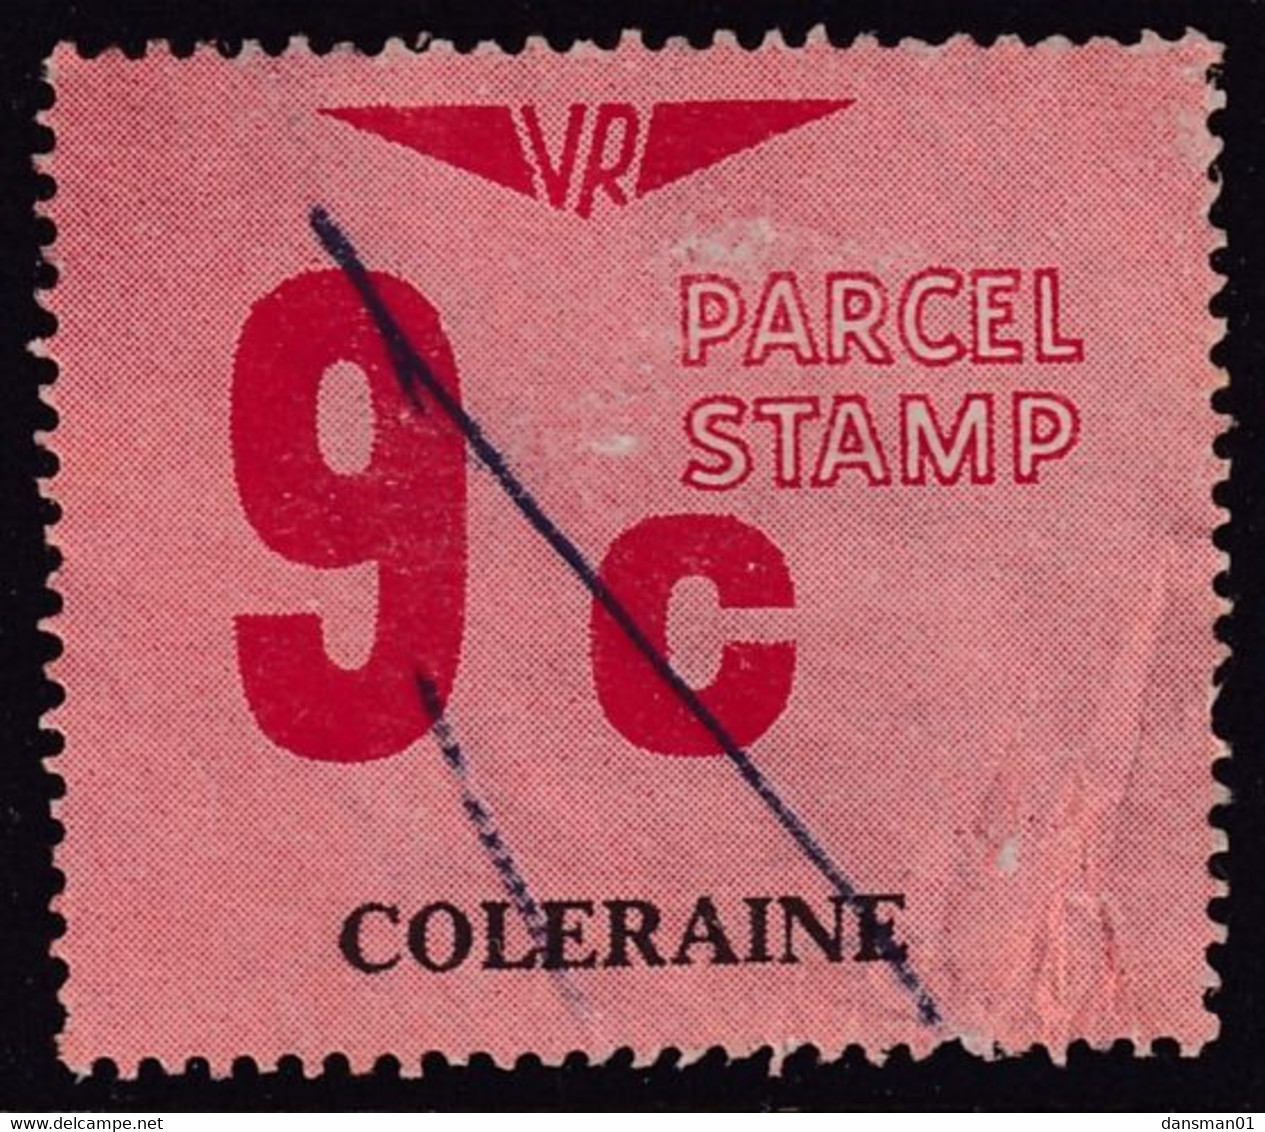 Victoria 1966 Railway Parcel Stamp 9c COLERAINE Used - Varietà & Curiosità